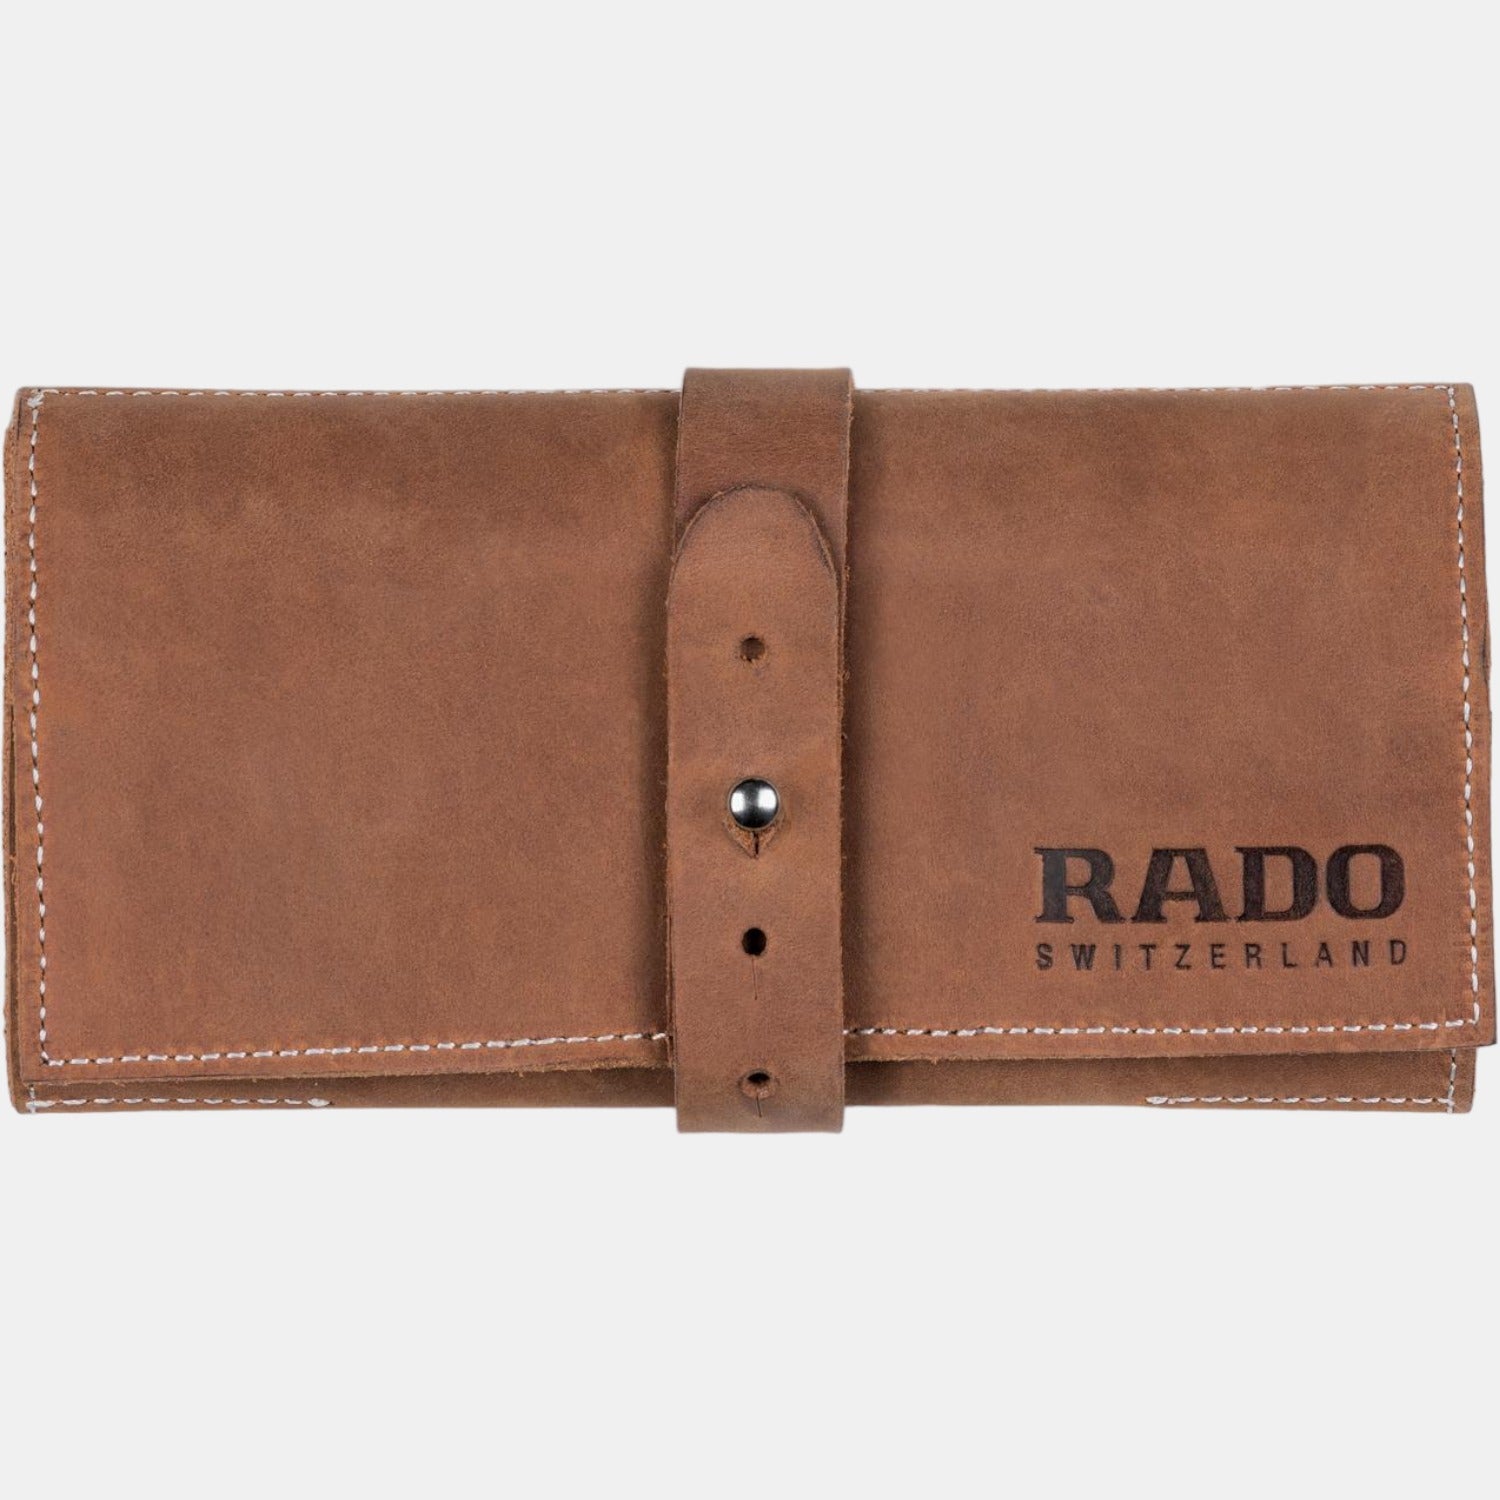 rado-stainless-steel-green-analog-men-watch-r32505318